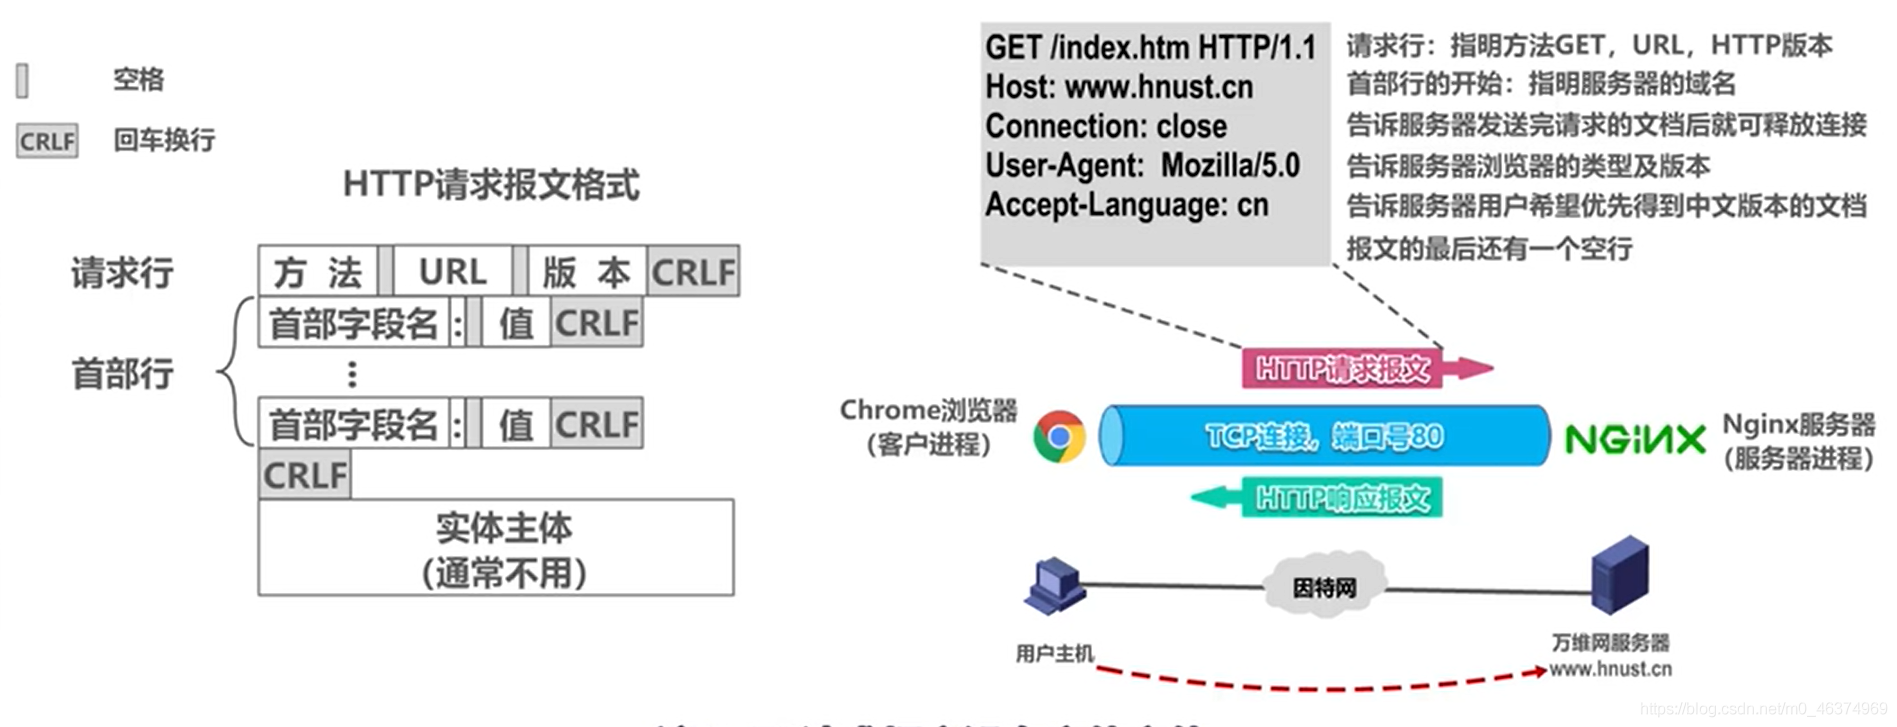 计算机网络学习（九）—应用层的概述_域名服务器_38